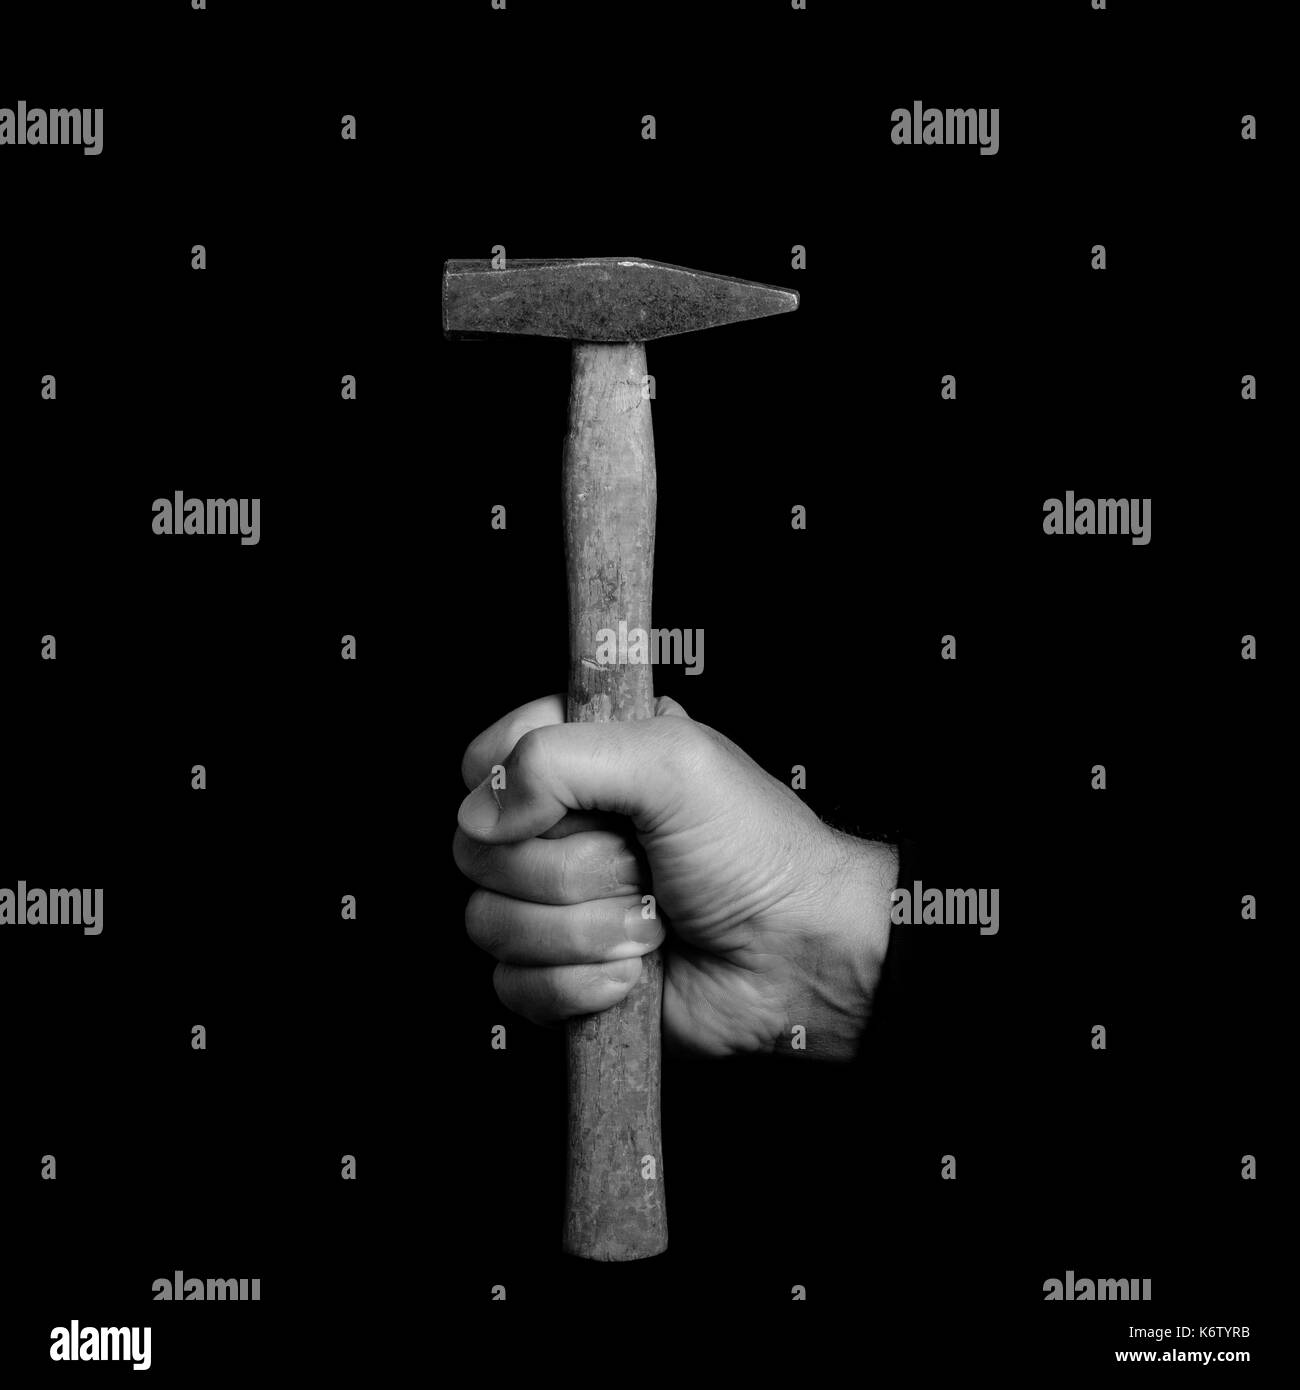 Hammer- outils dans la main d'un homme - noir et blanc photo Banque D'Images